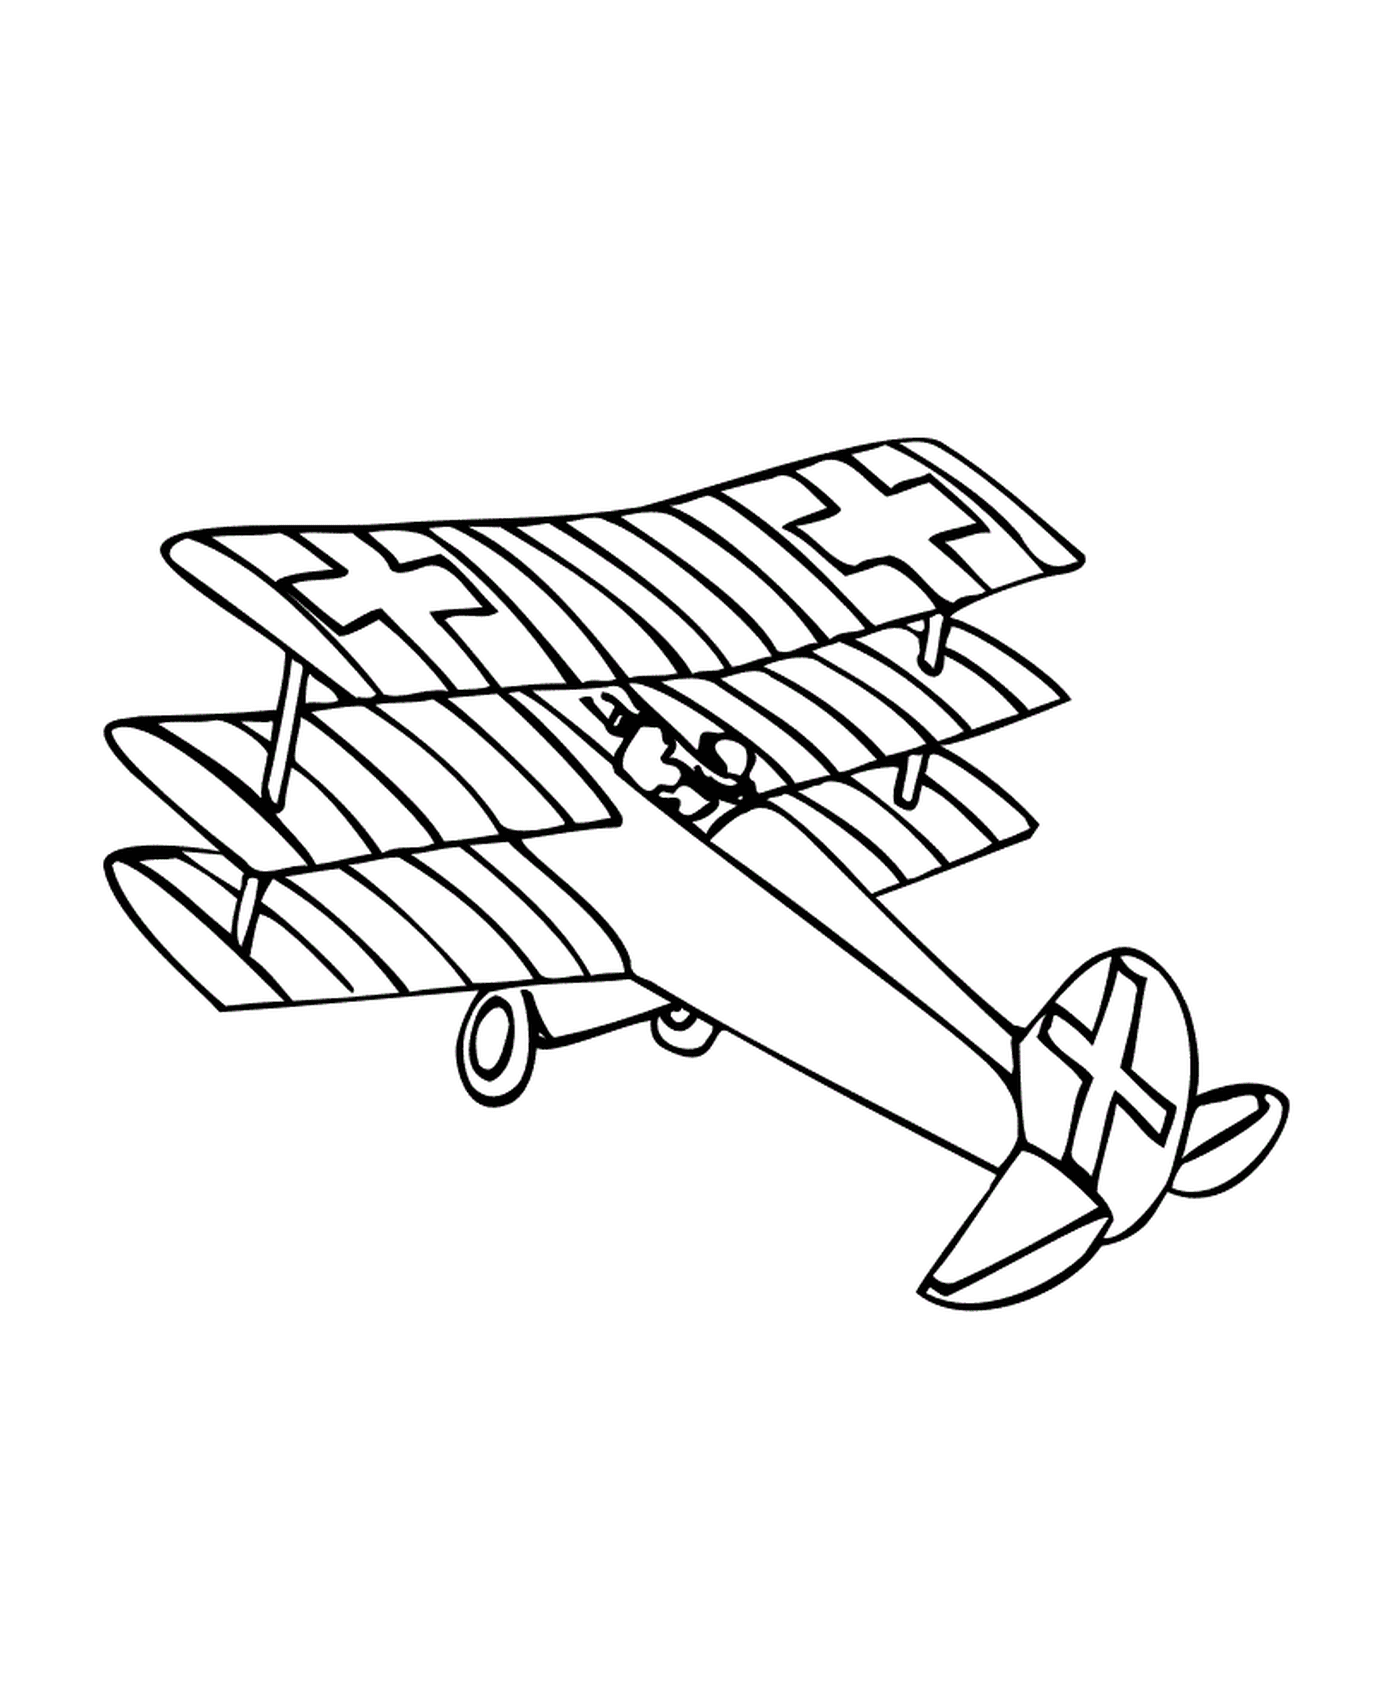  A plane is drawn 